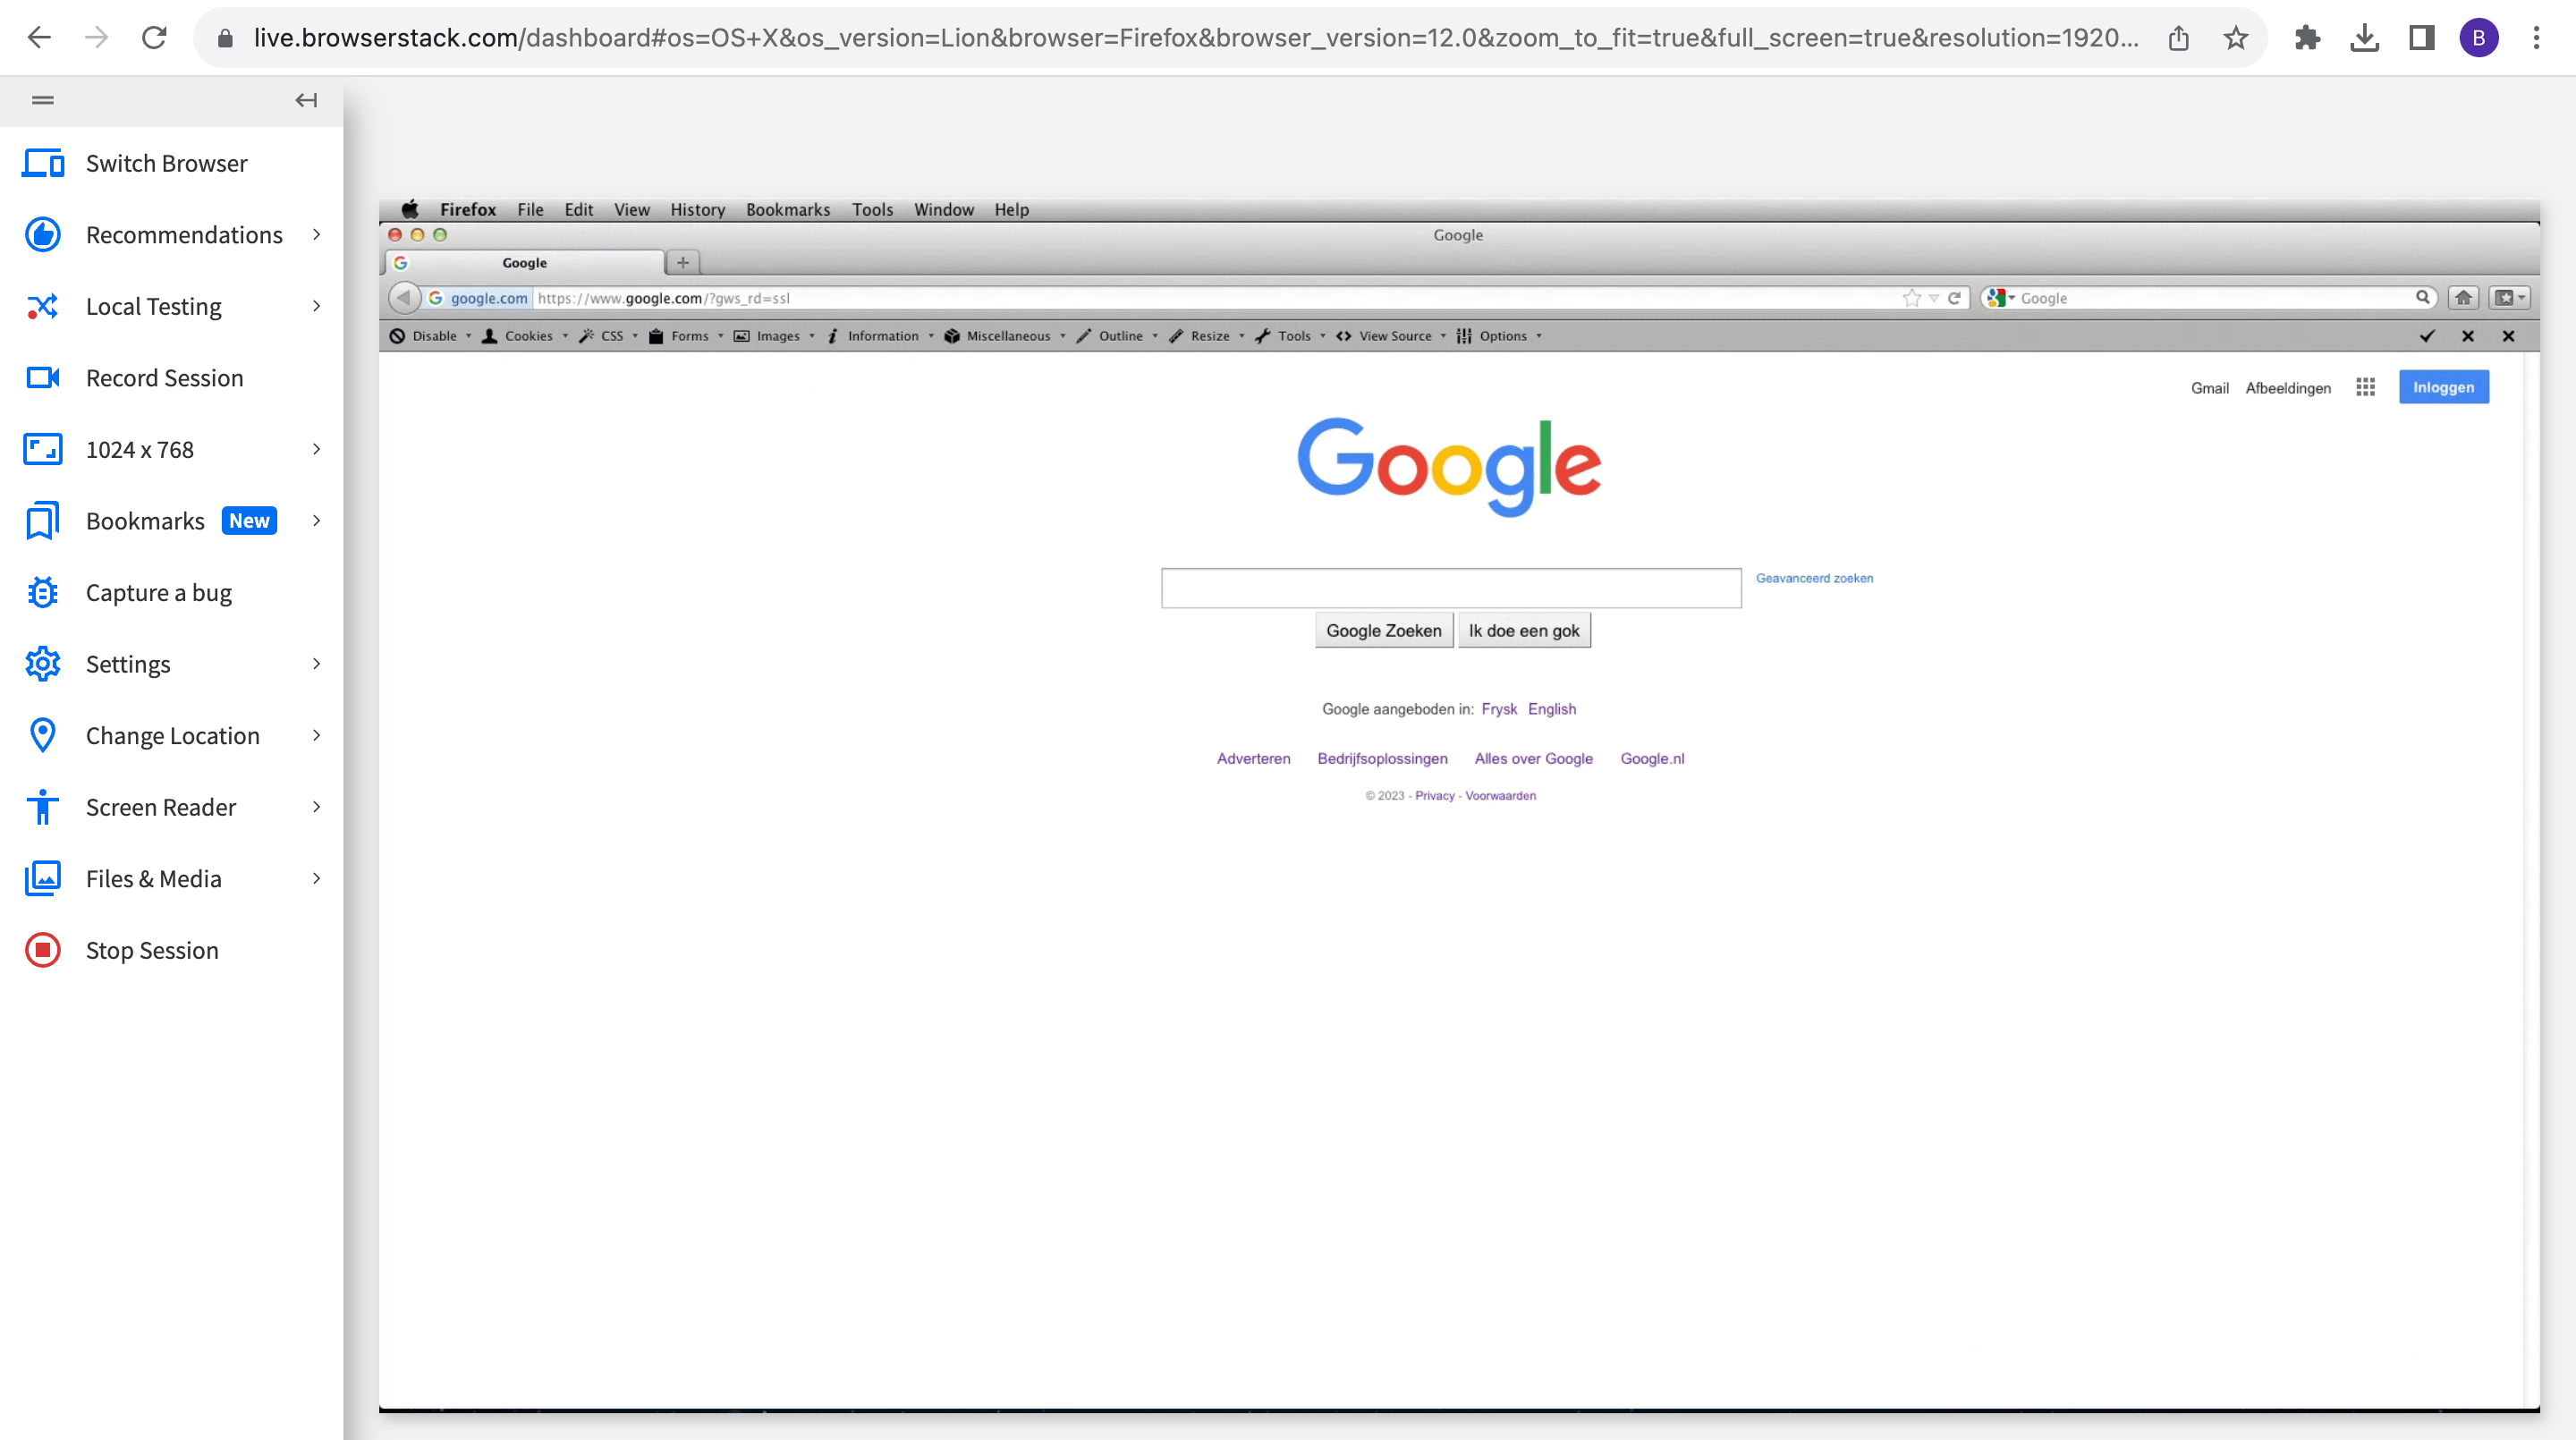 Enter integration URL in browser